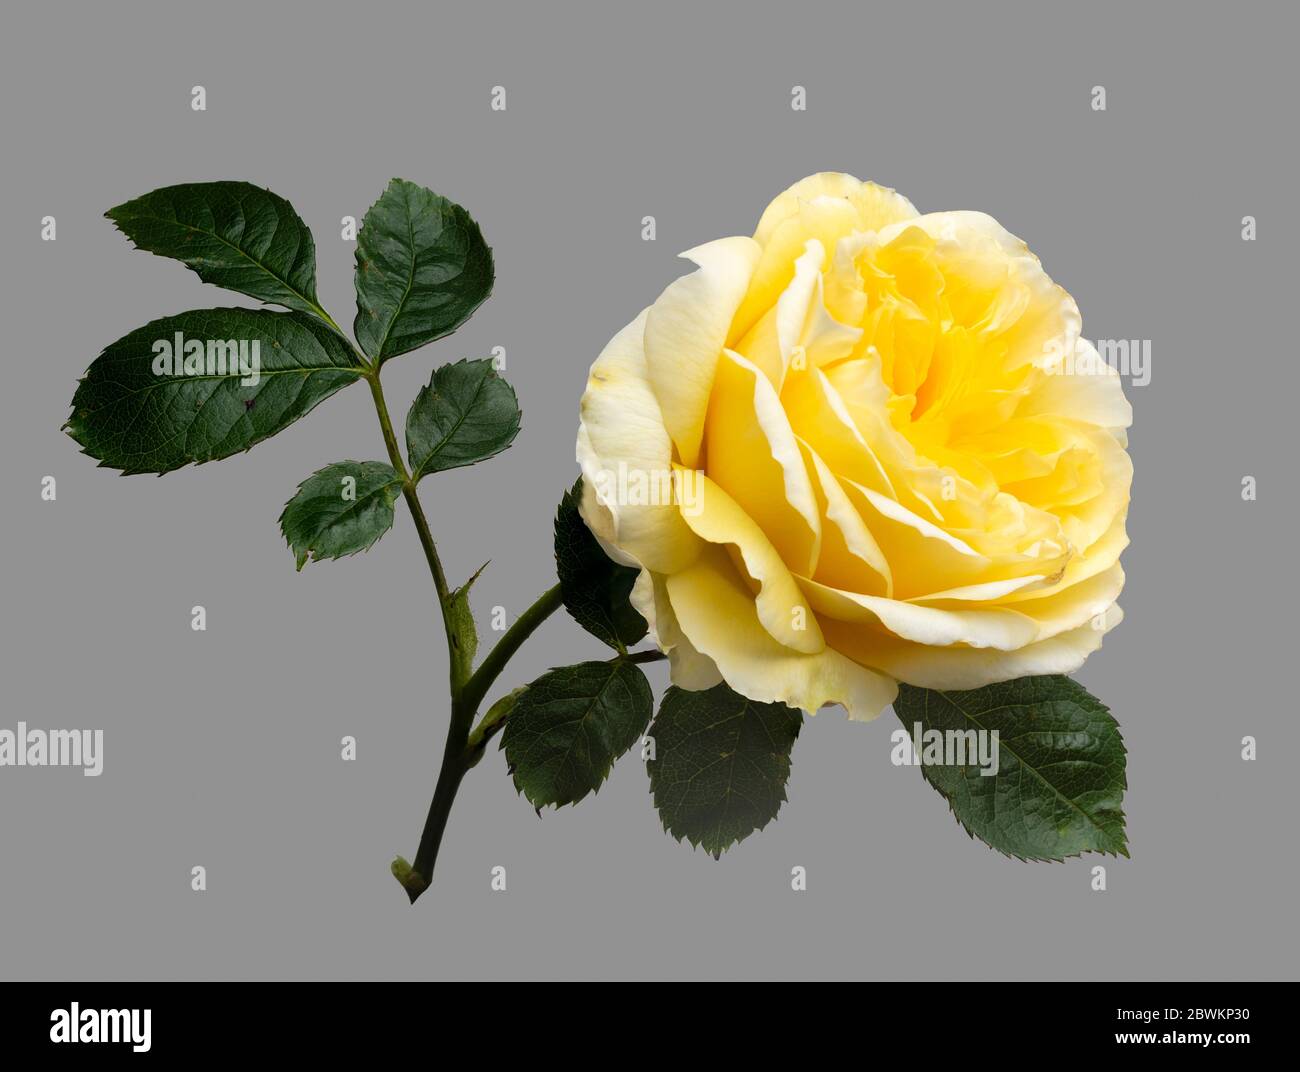 Einzelne Blume und Blätter der englischen Rose von David Austin, Rosa ;Graham Thomas' auf grauem Hintergrund Stockfoto